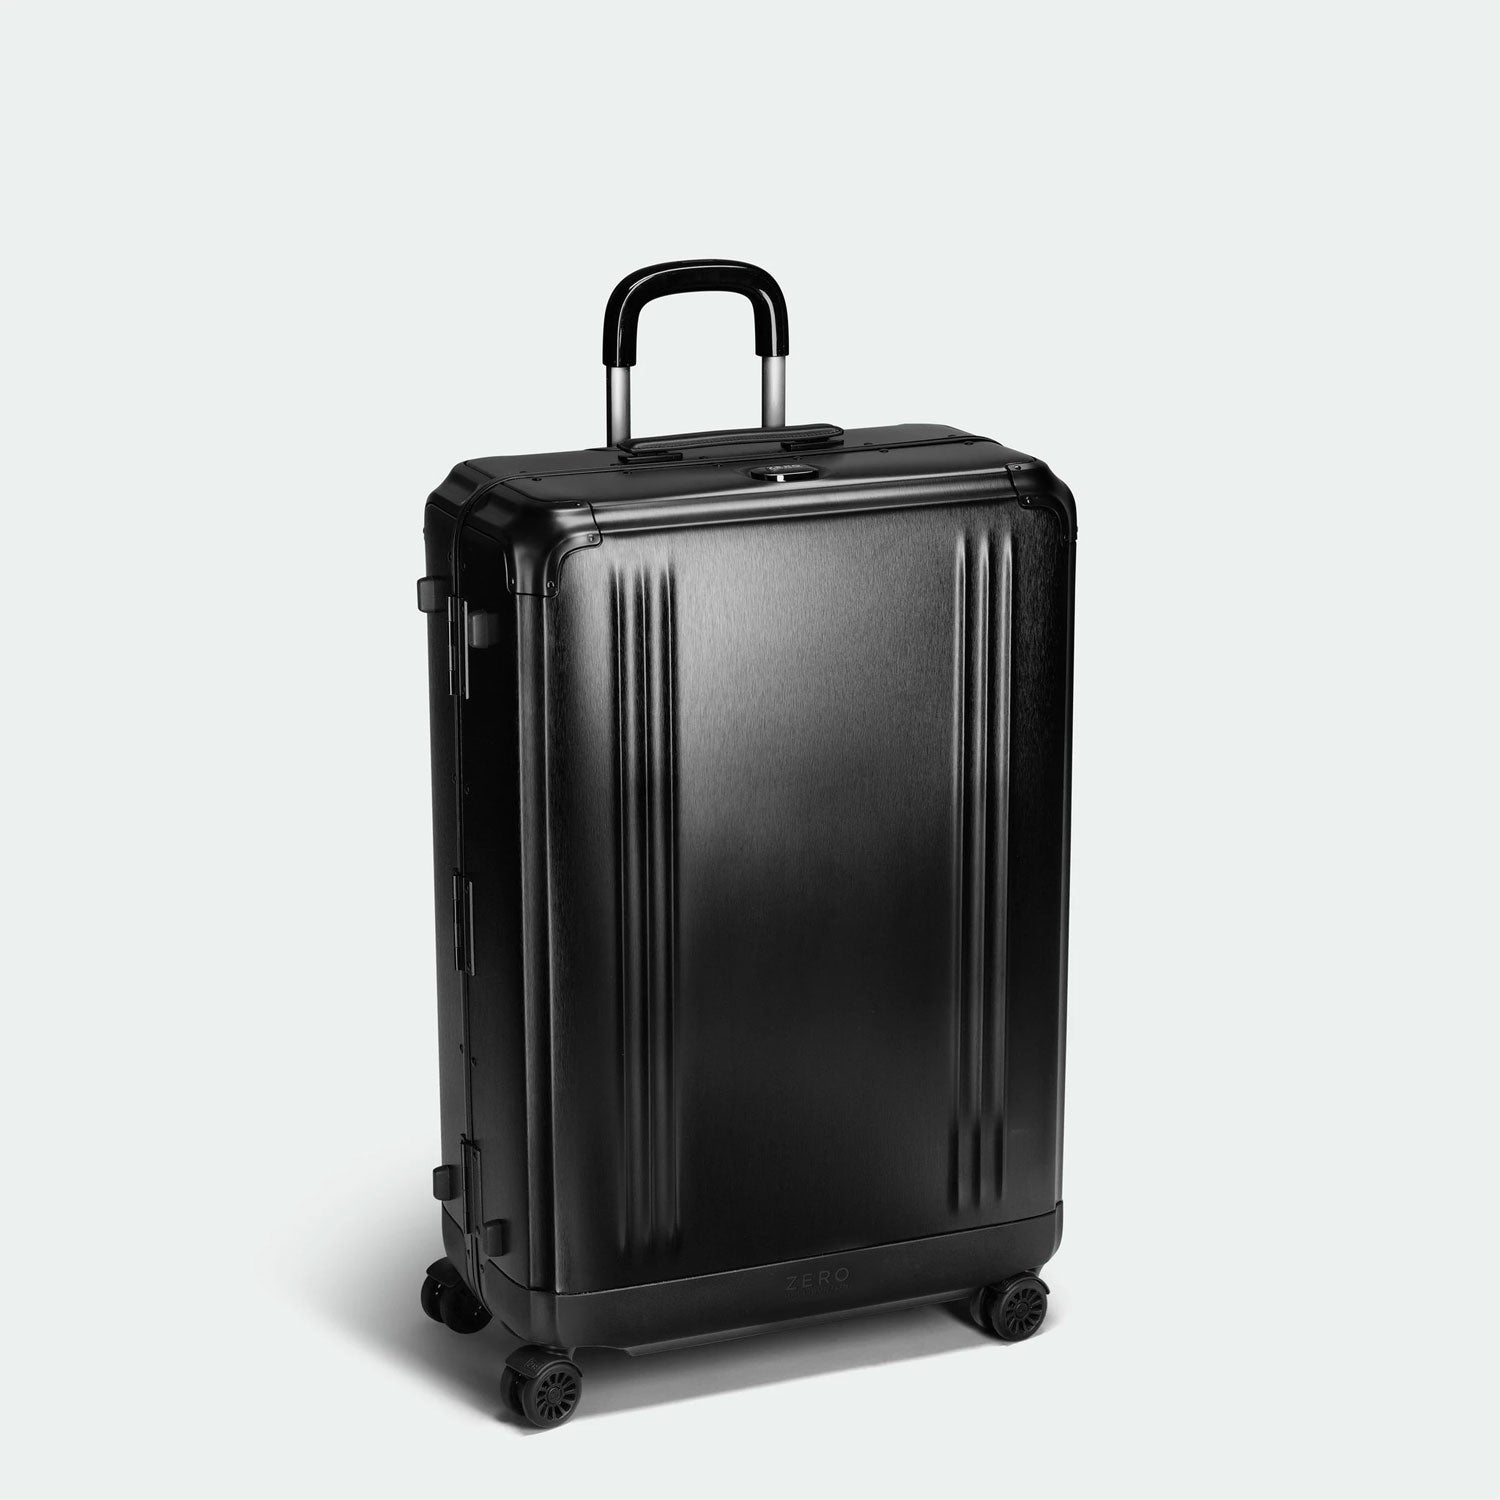 Zero Halliburton Pursuit Aluminum Large Travel Case Black